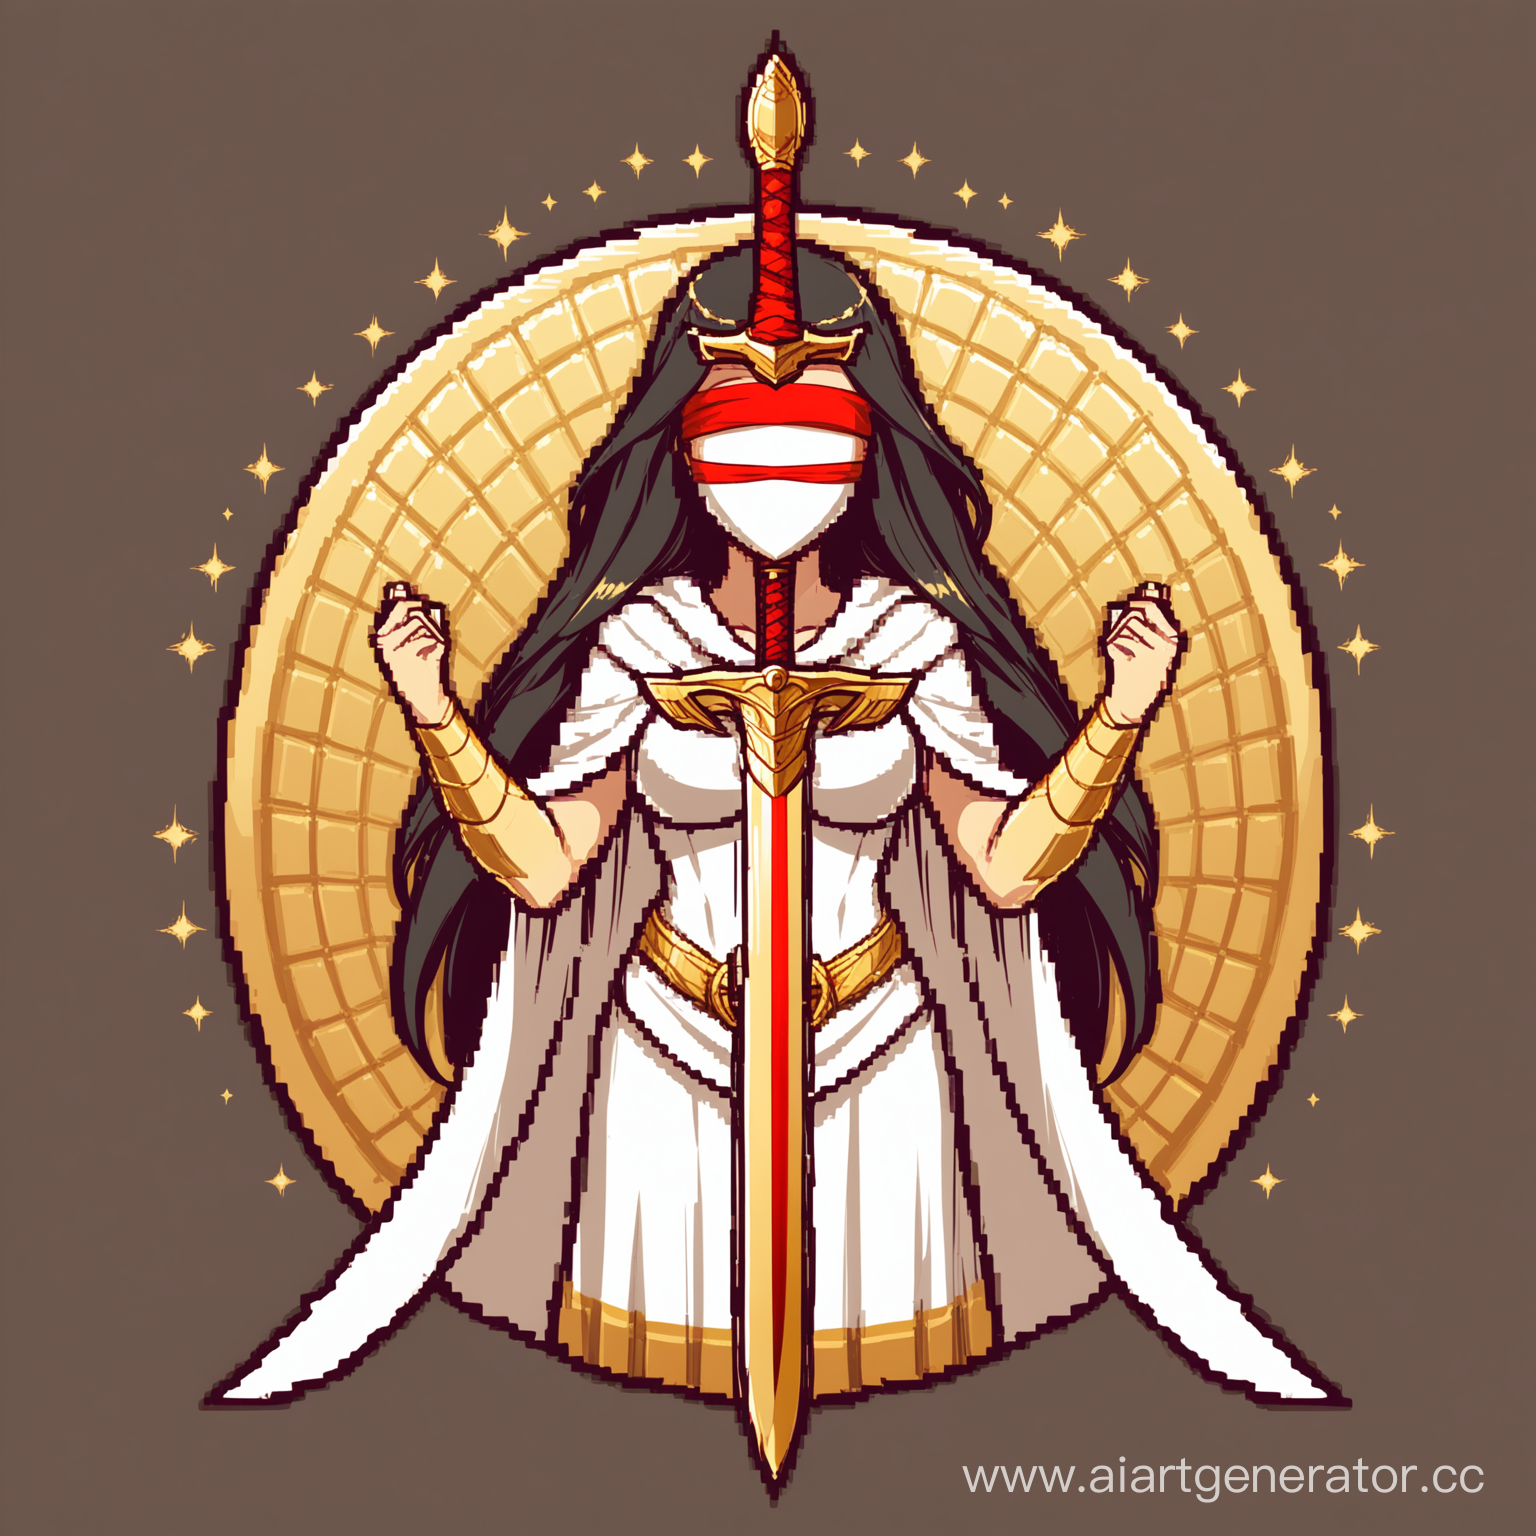 Логотип для клана в DISCORD, называется FEMIDA CULT.
Необходимо нарисовать логотип с пропорциями 1х1, на котором будет изображена ФЕМИДА, греческая богиня правосудия в бело-золотом одеянии, с красной повязкой на глазах, золотым мечом и золотыми весами, которые называются либра.